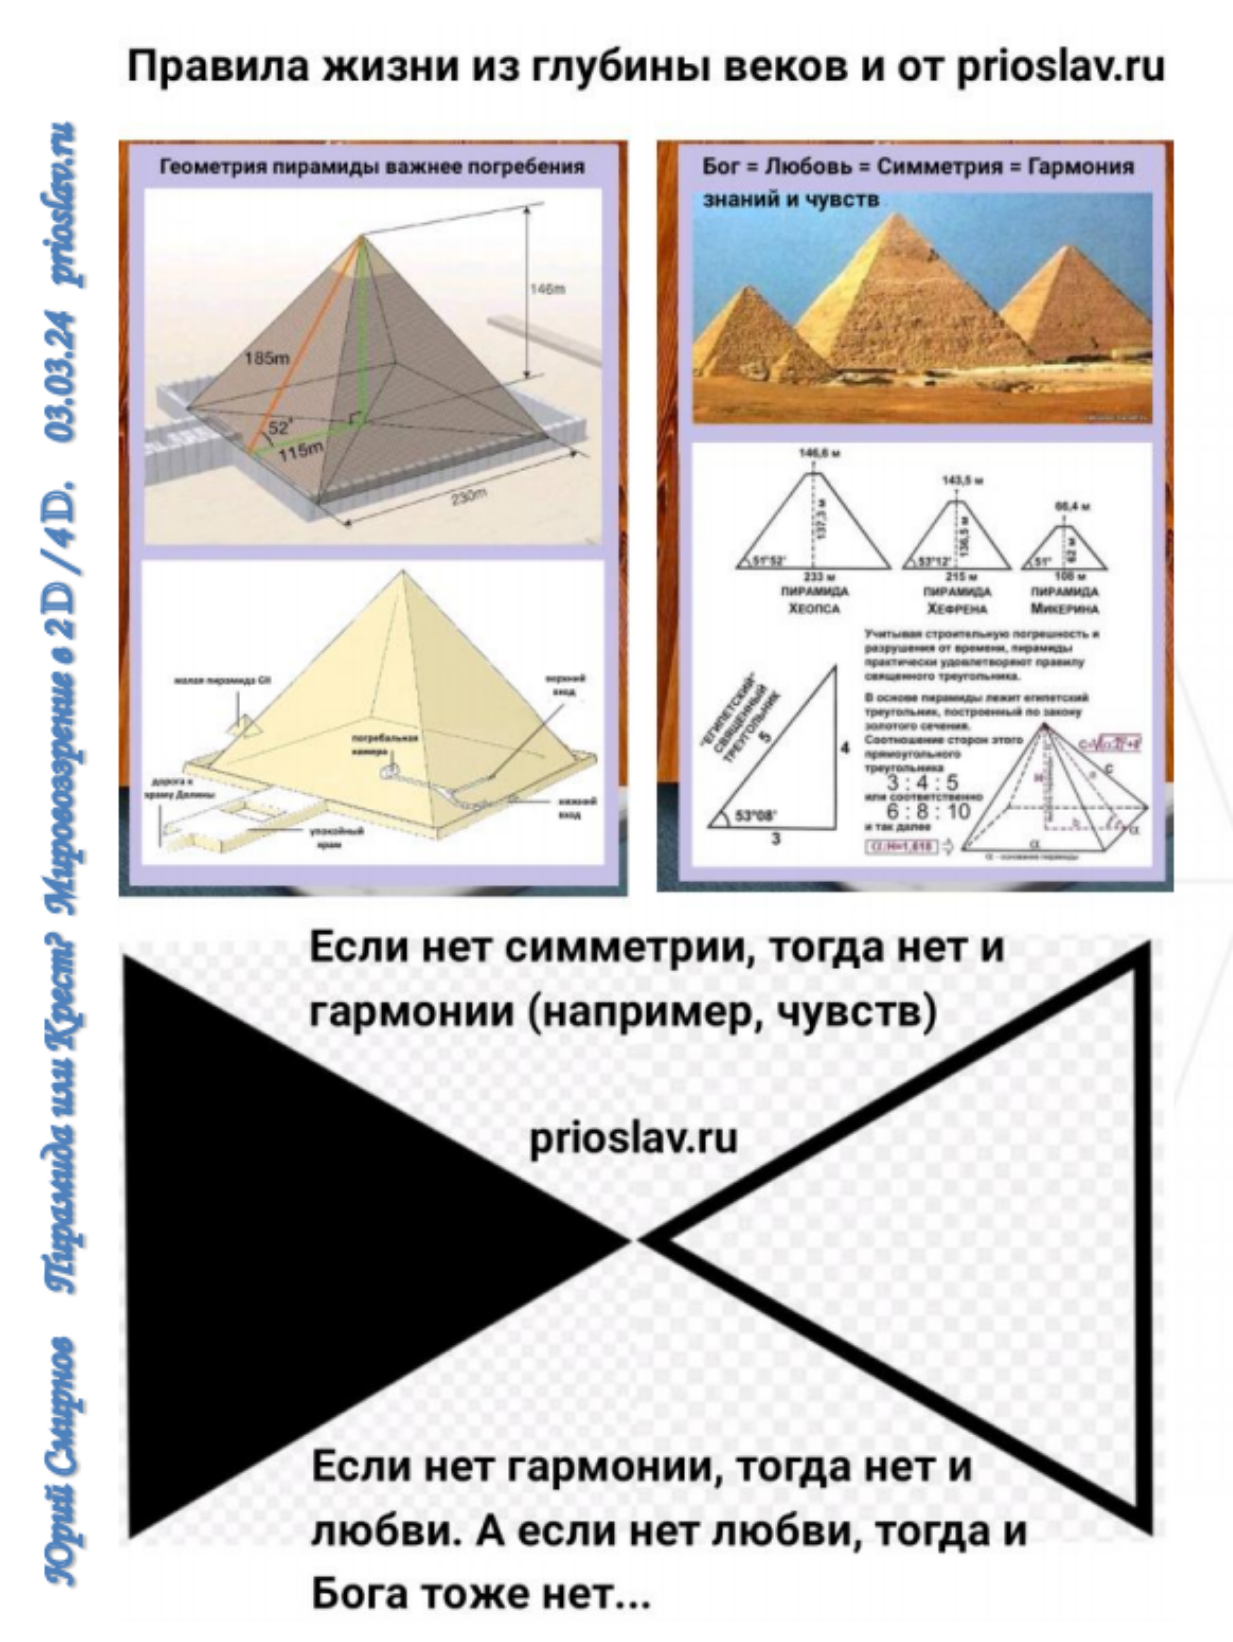 Правило жизни из древних пирамид